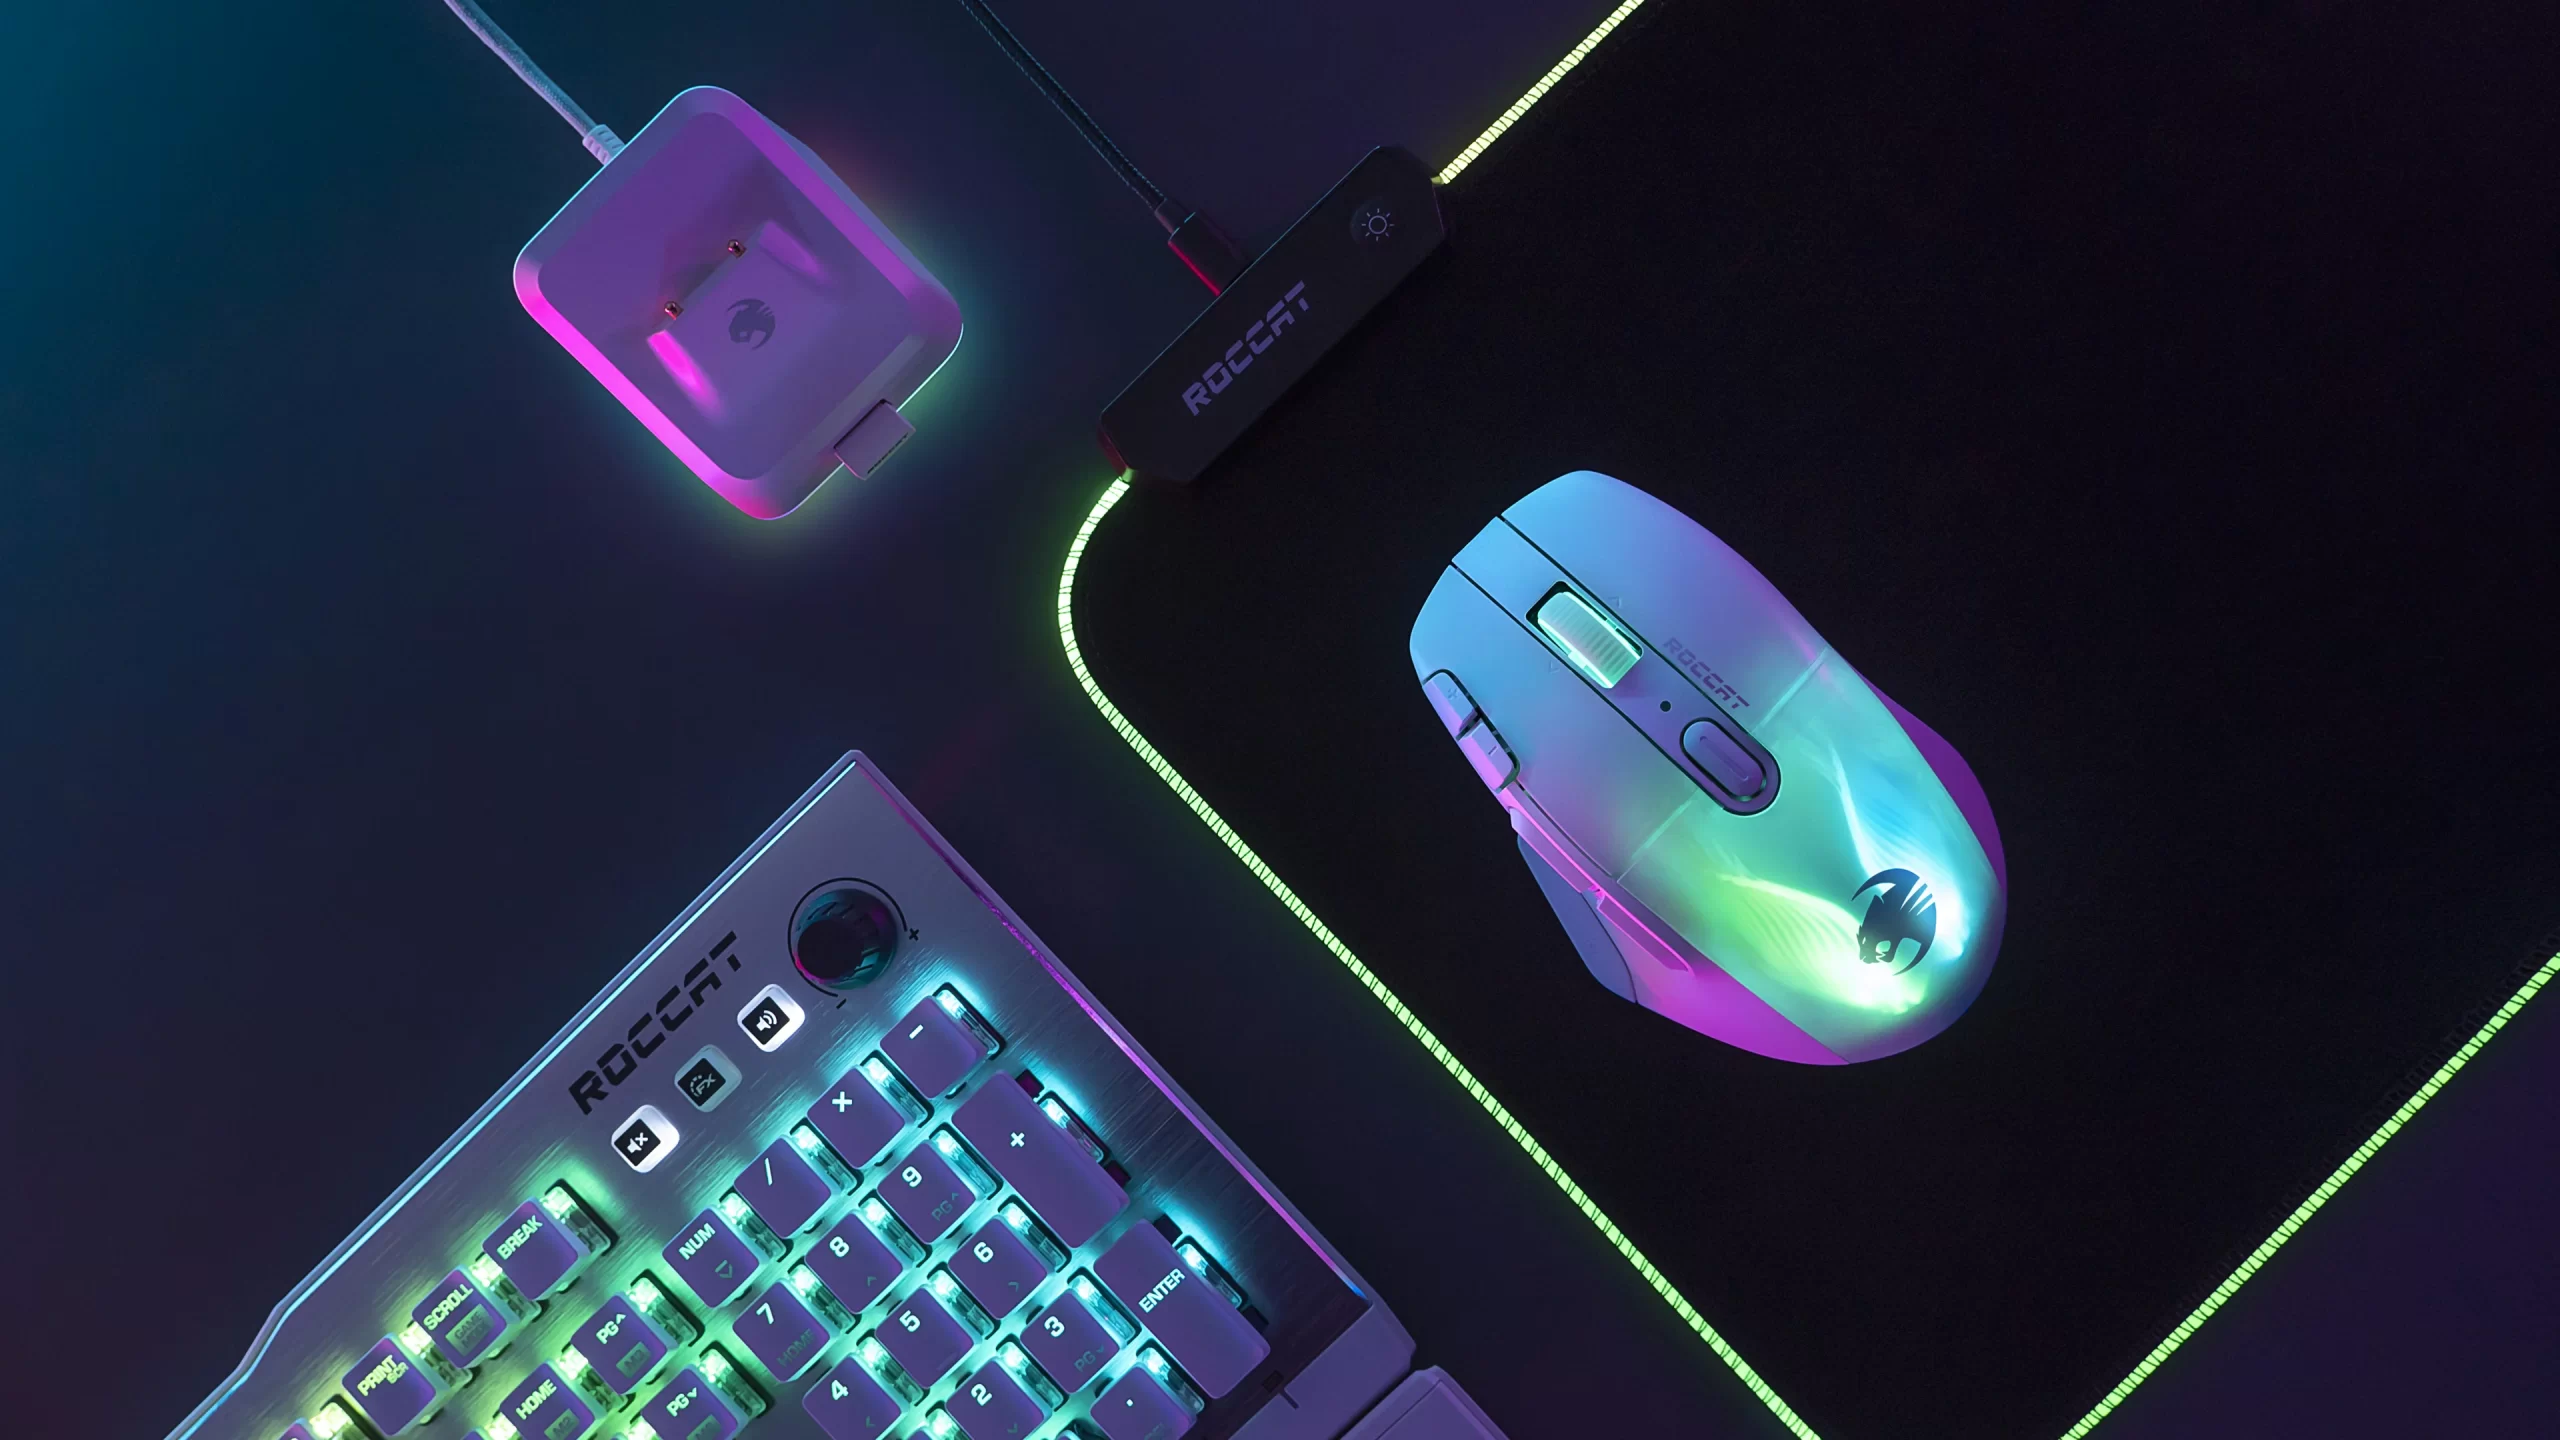 Presentato il nuovo Kone XP Air, nuovo mouse gaming con tecnologia Stellar Wireless